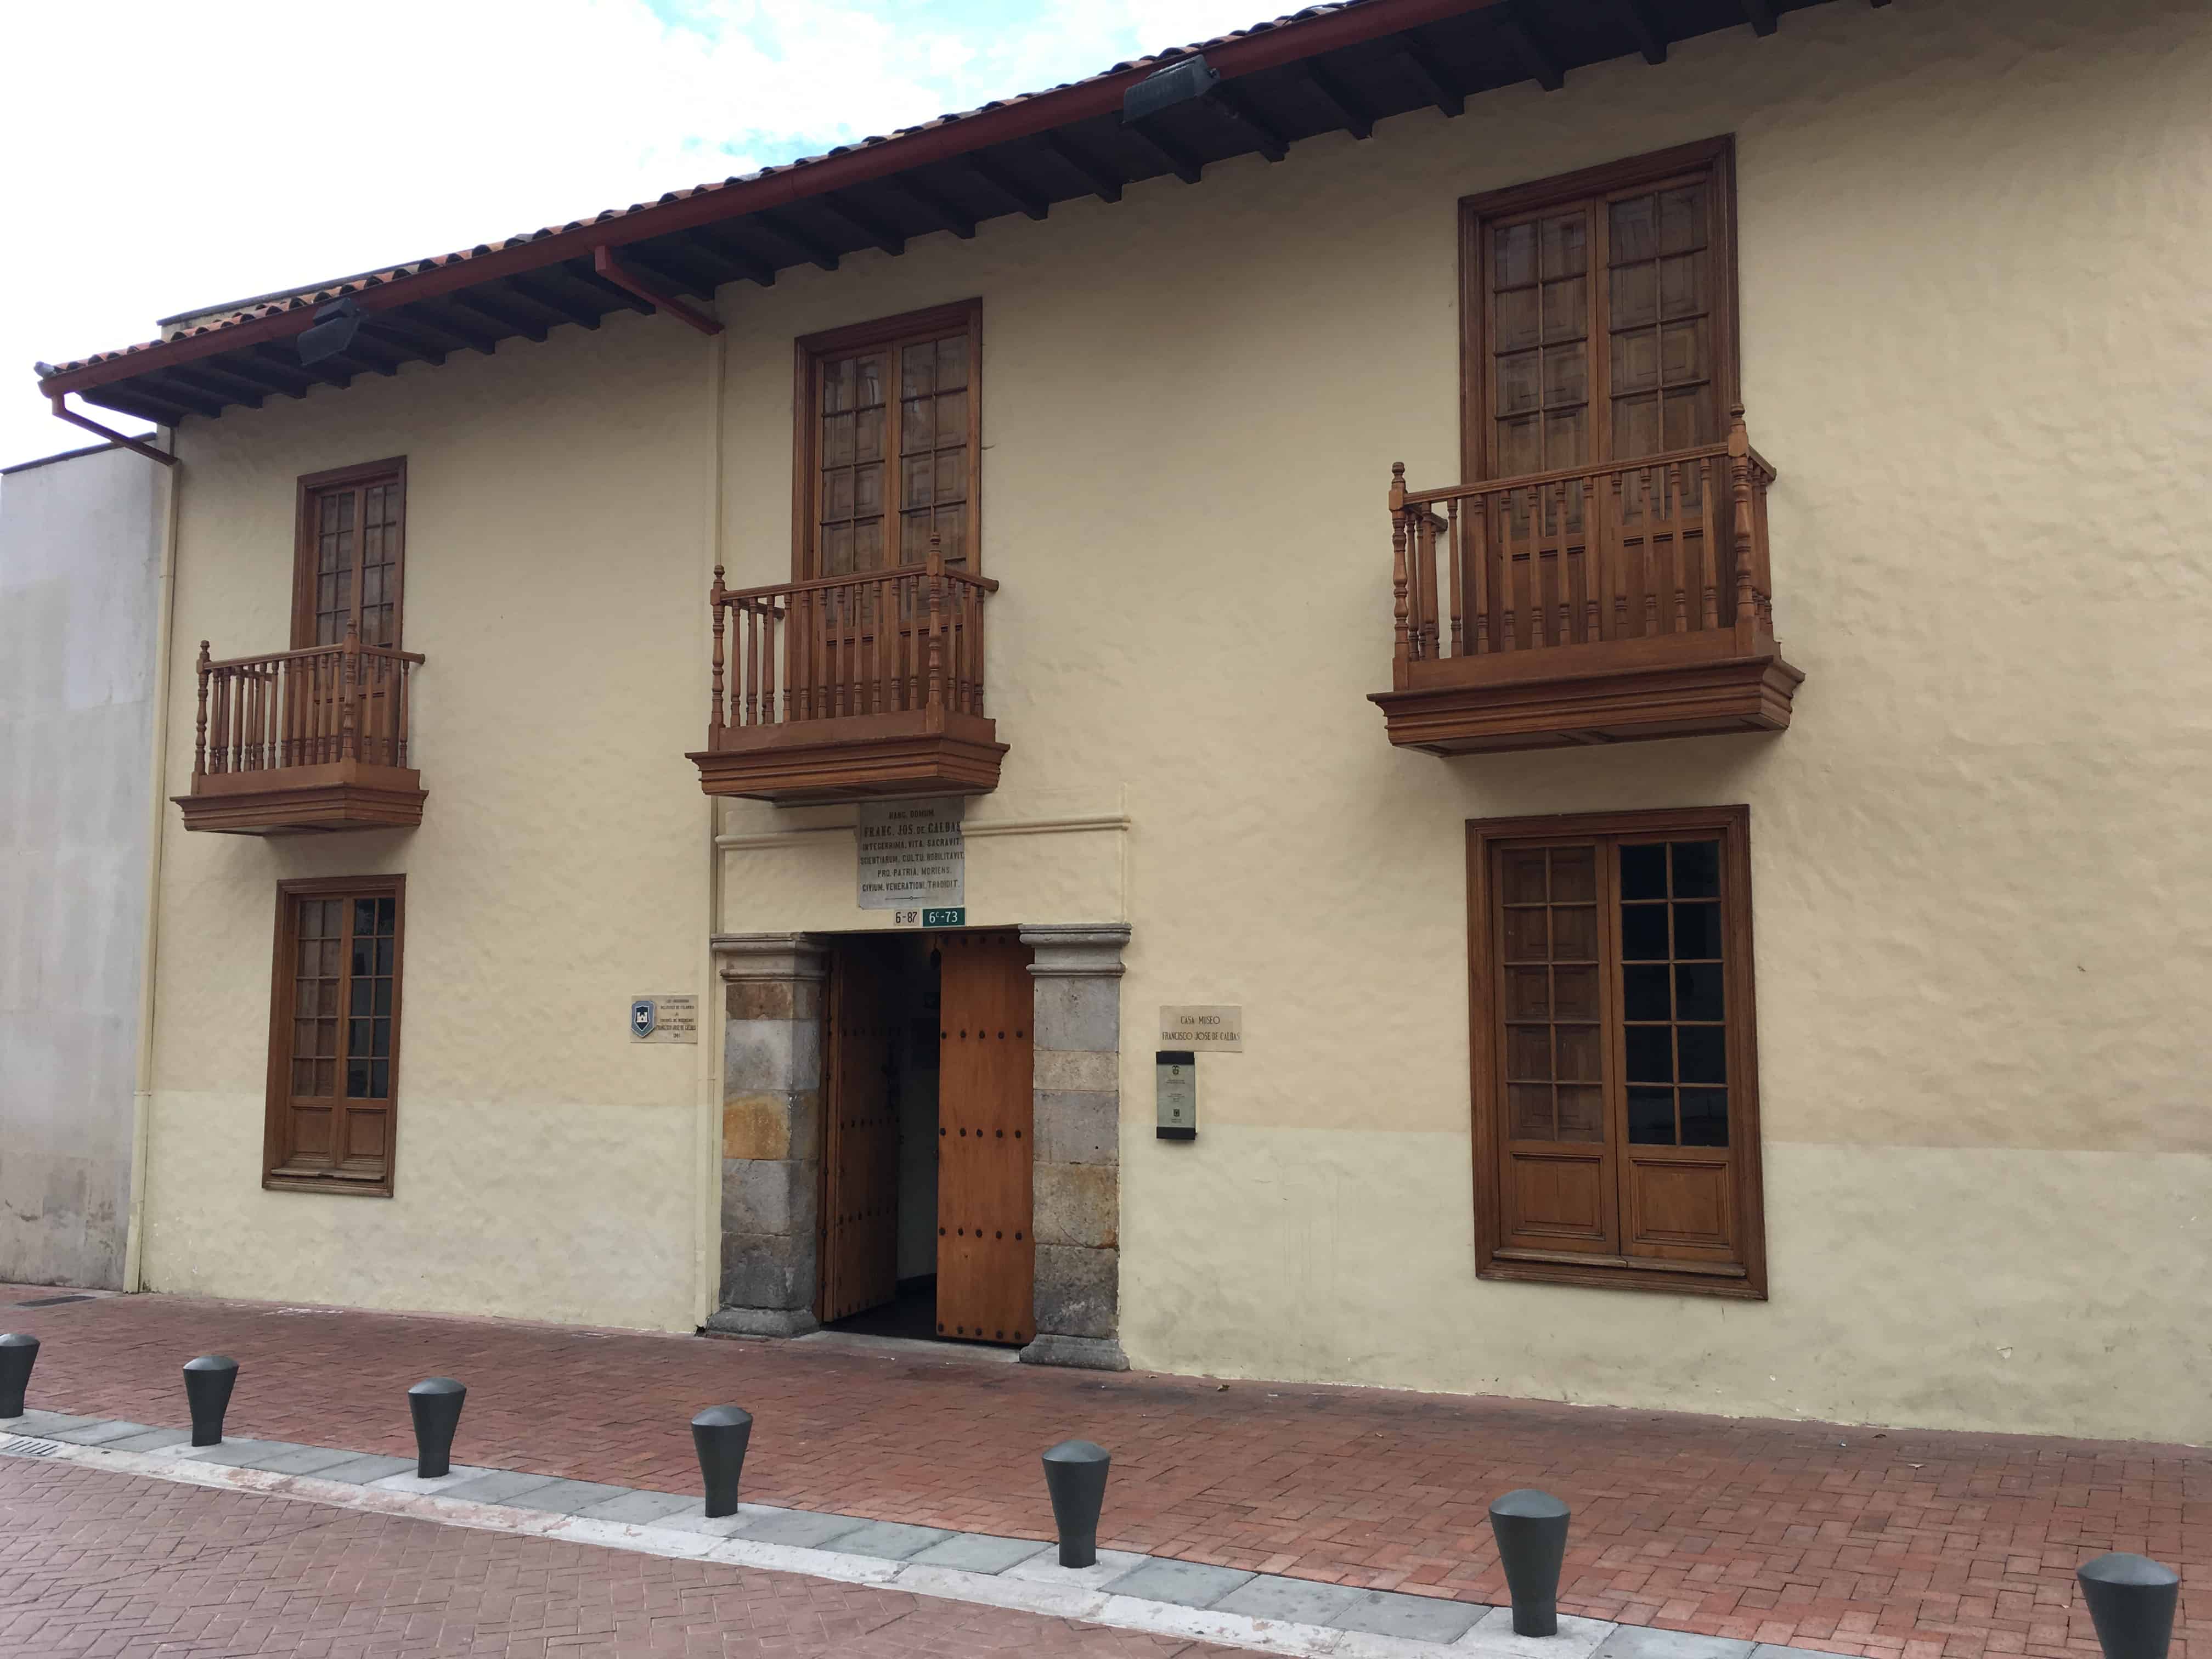 Francisco José de Caldas House Museum in La Candelaria, Bogotá, Colombia